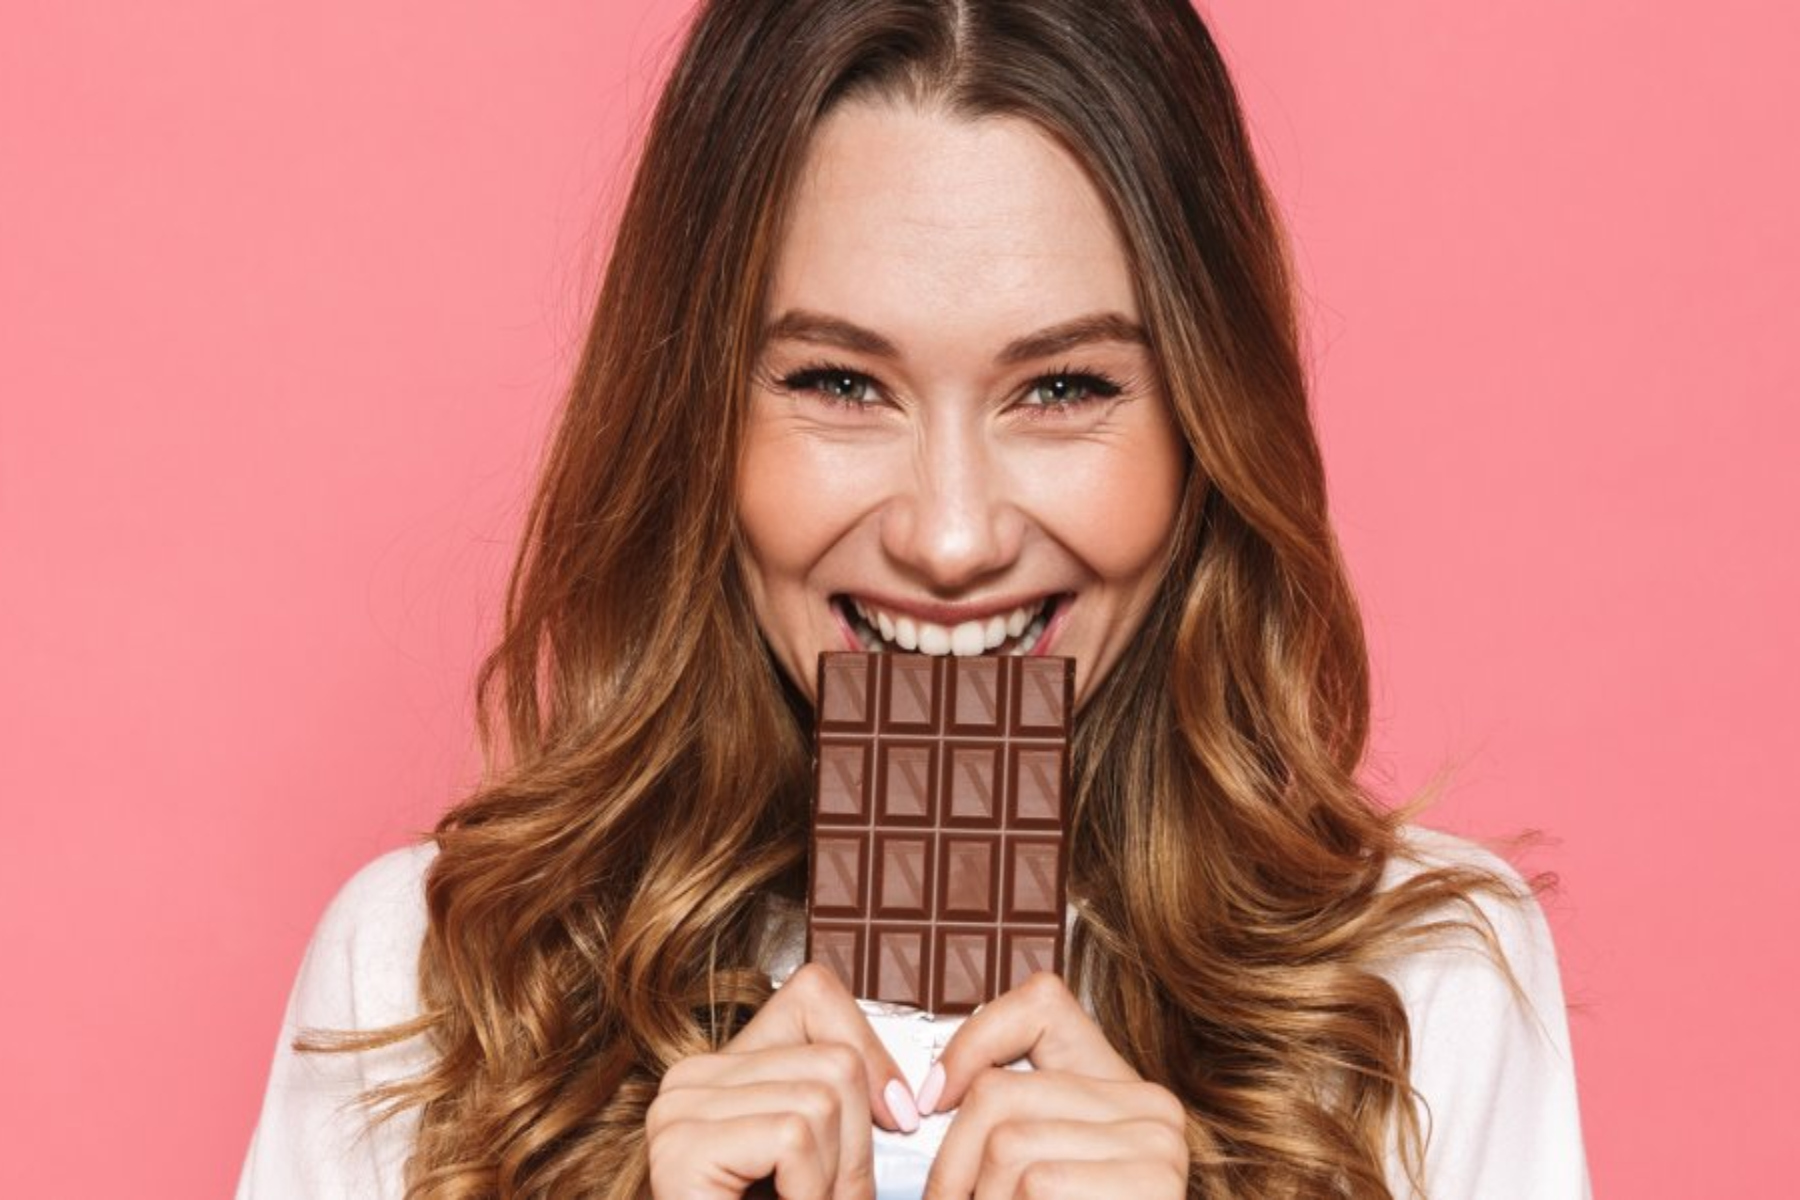 Μαύρη σοκολάτα: Υπέροχη επιλογή για την αντιμετώπιση της αναιμίας